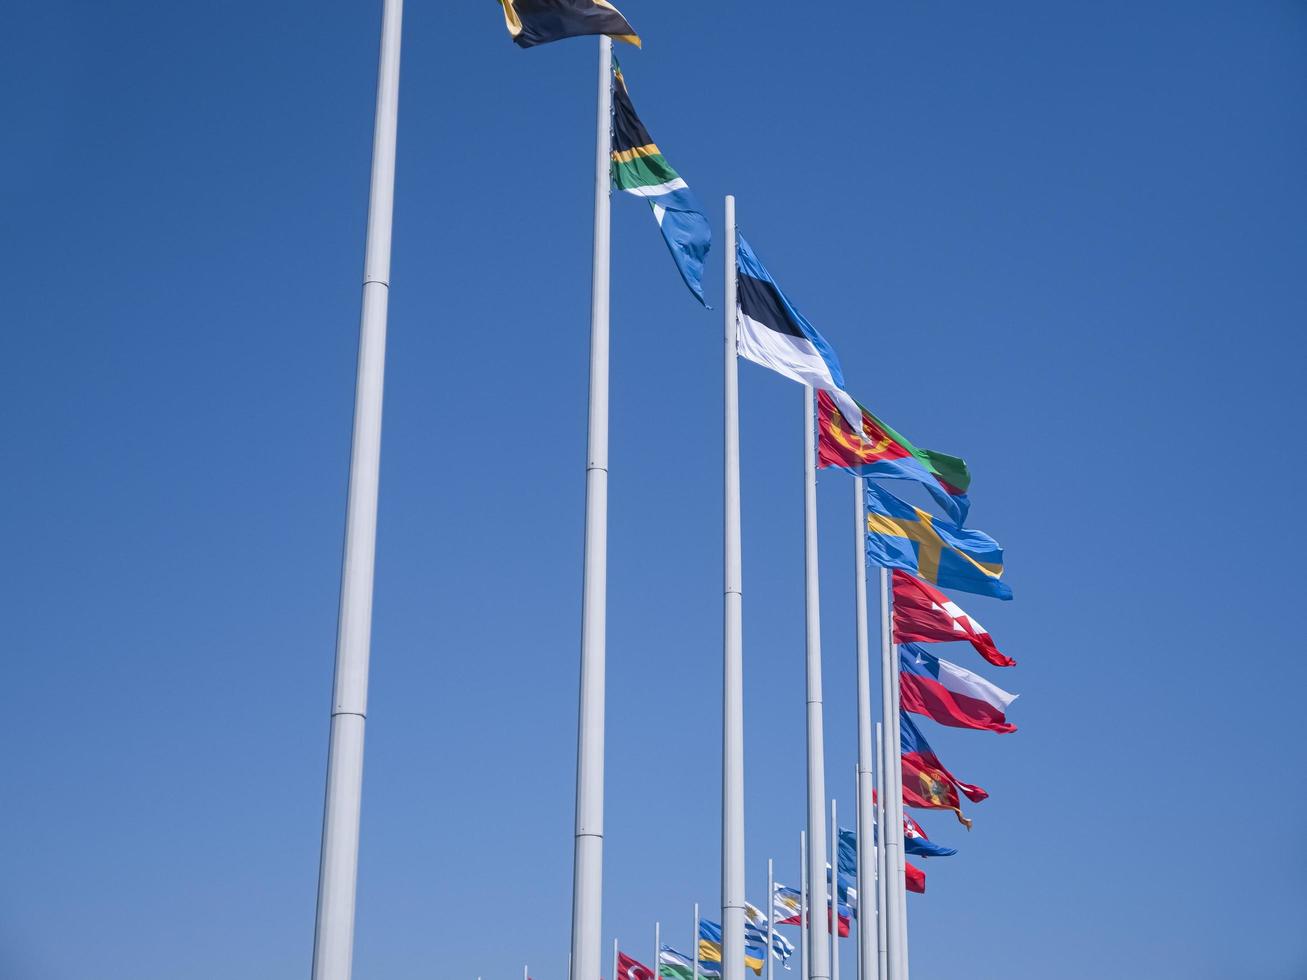 adler city, rusland - augustus 2019, vlaggen van de landen van de wereld op vlaggenmasten in olympisch park foto